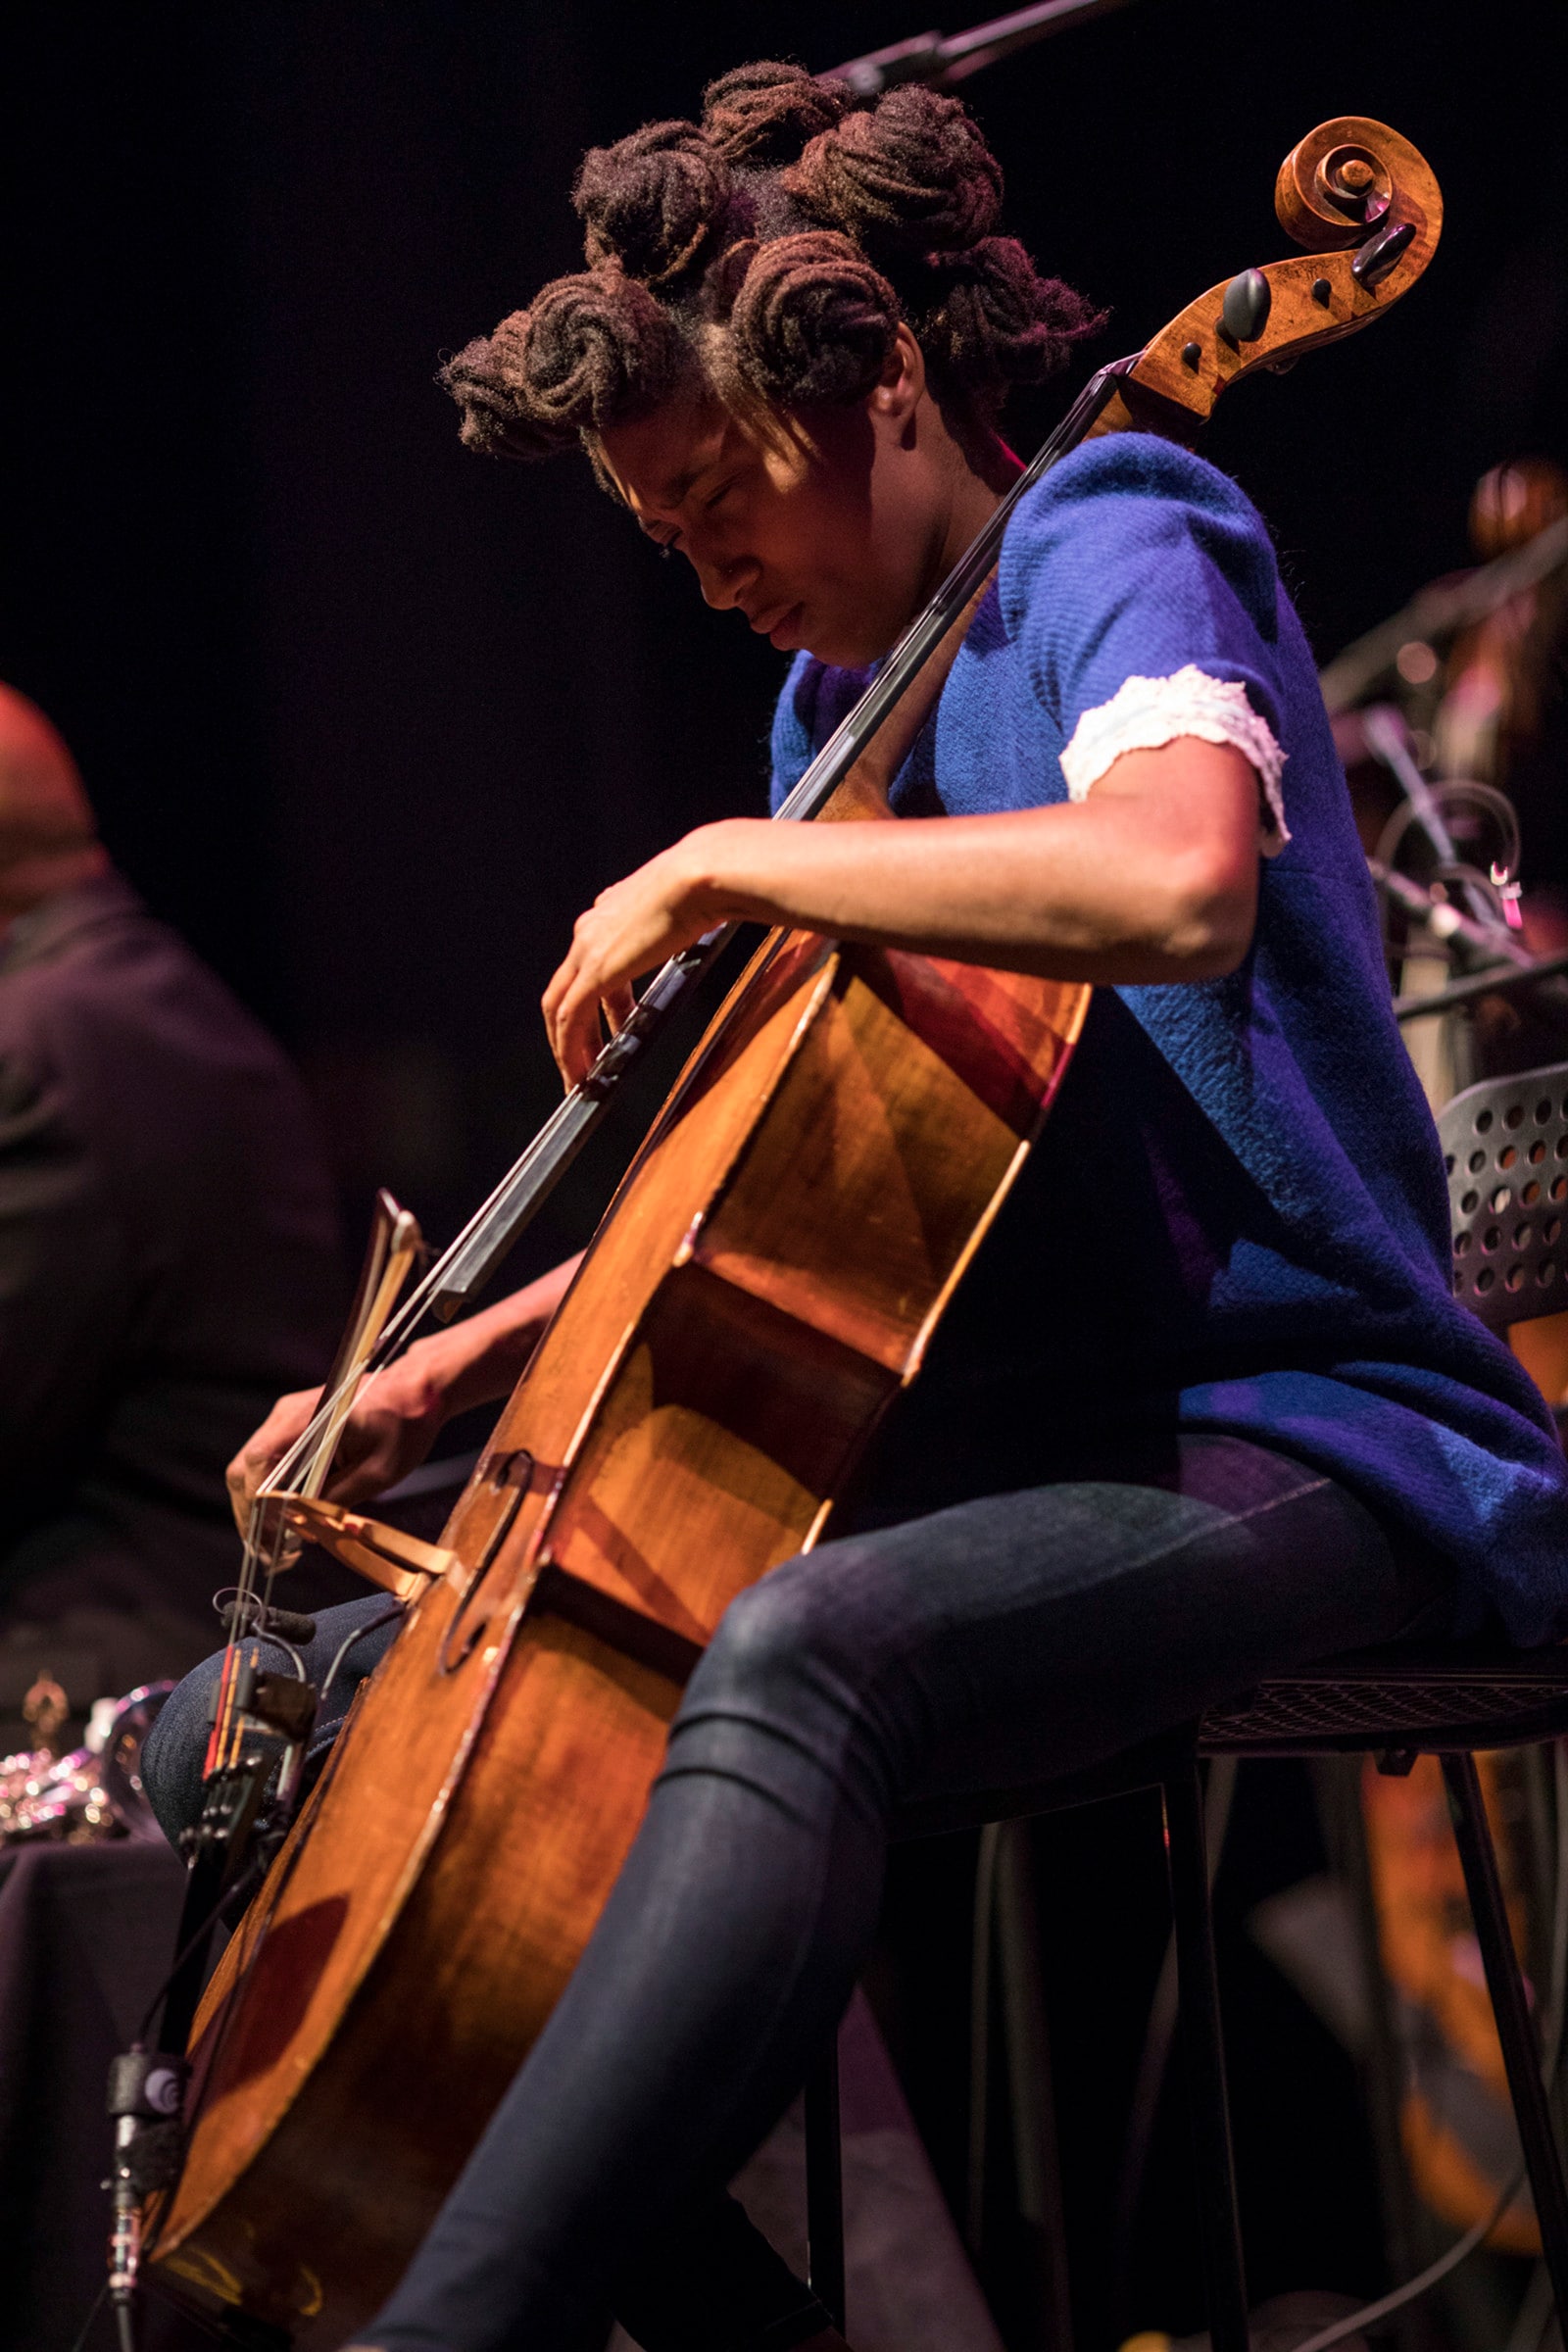 La violoncellista Tomeka Reid, guest star dell'Art Ensemble di Chicago, si esibisce al festival October Revolution in Jazz & Contemporary Music a Philadelphia, 2017